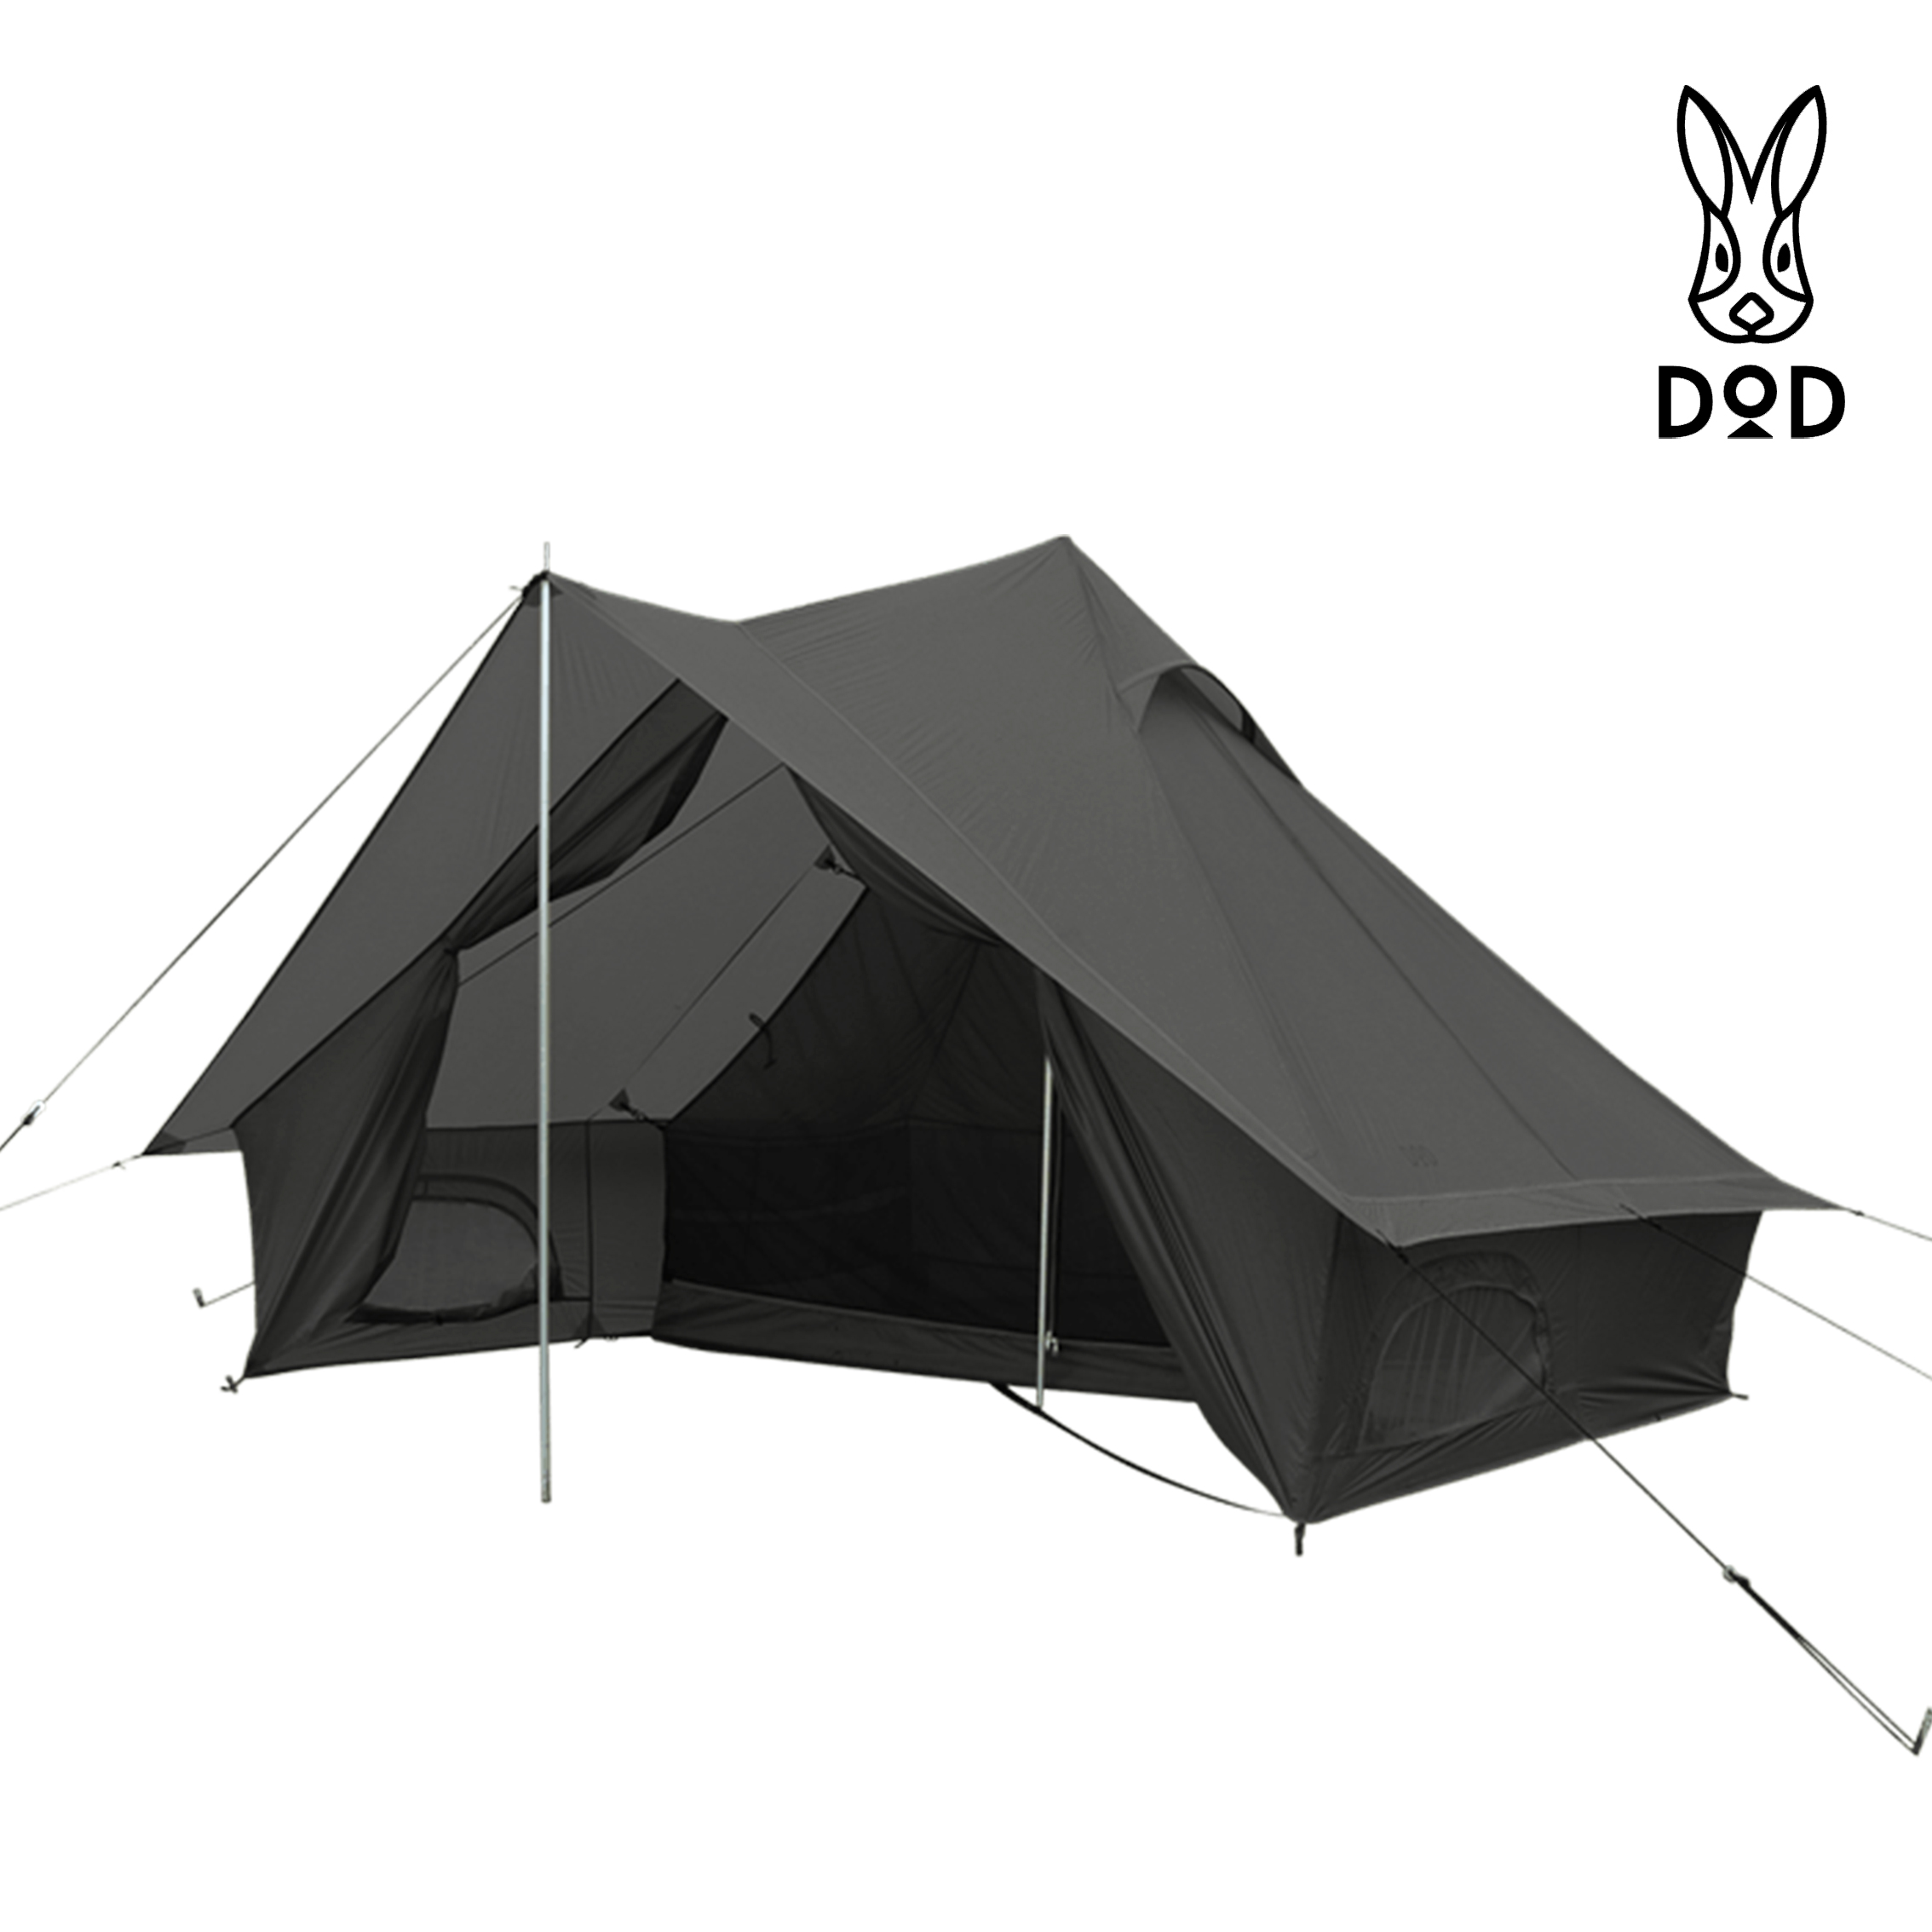 [T1-602-GY][T1-602-TN] 디오디(DOD) 쇼넨 텐트 그레이/탄 프론트룸 원폴 텐트